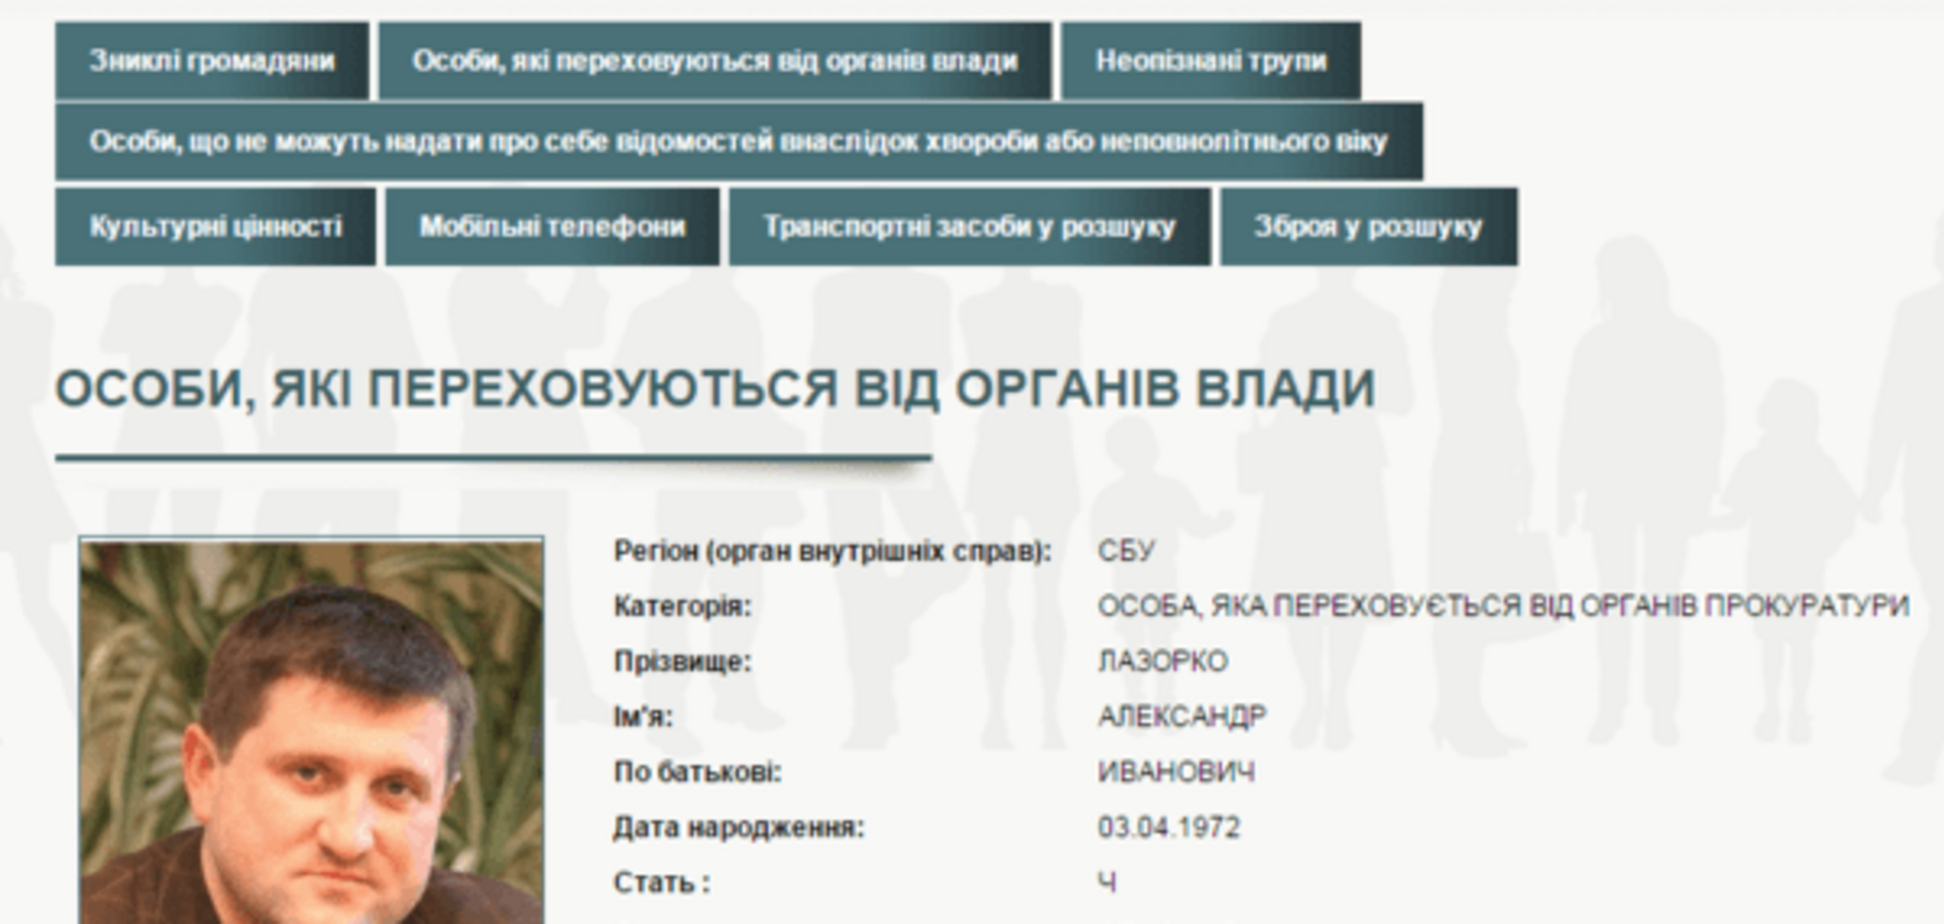 Шукає міліція: екс-глава 'Укртранснафти' Лазорко оголошений в розшук